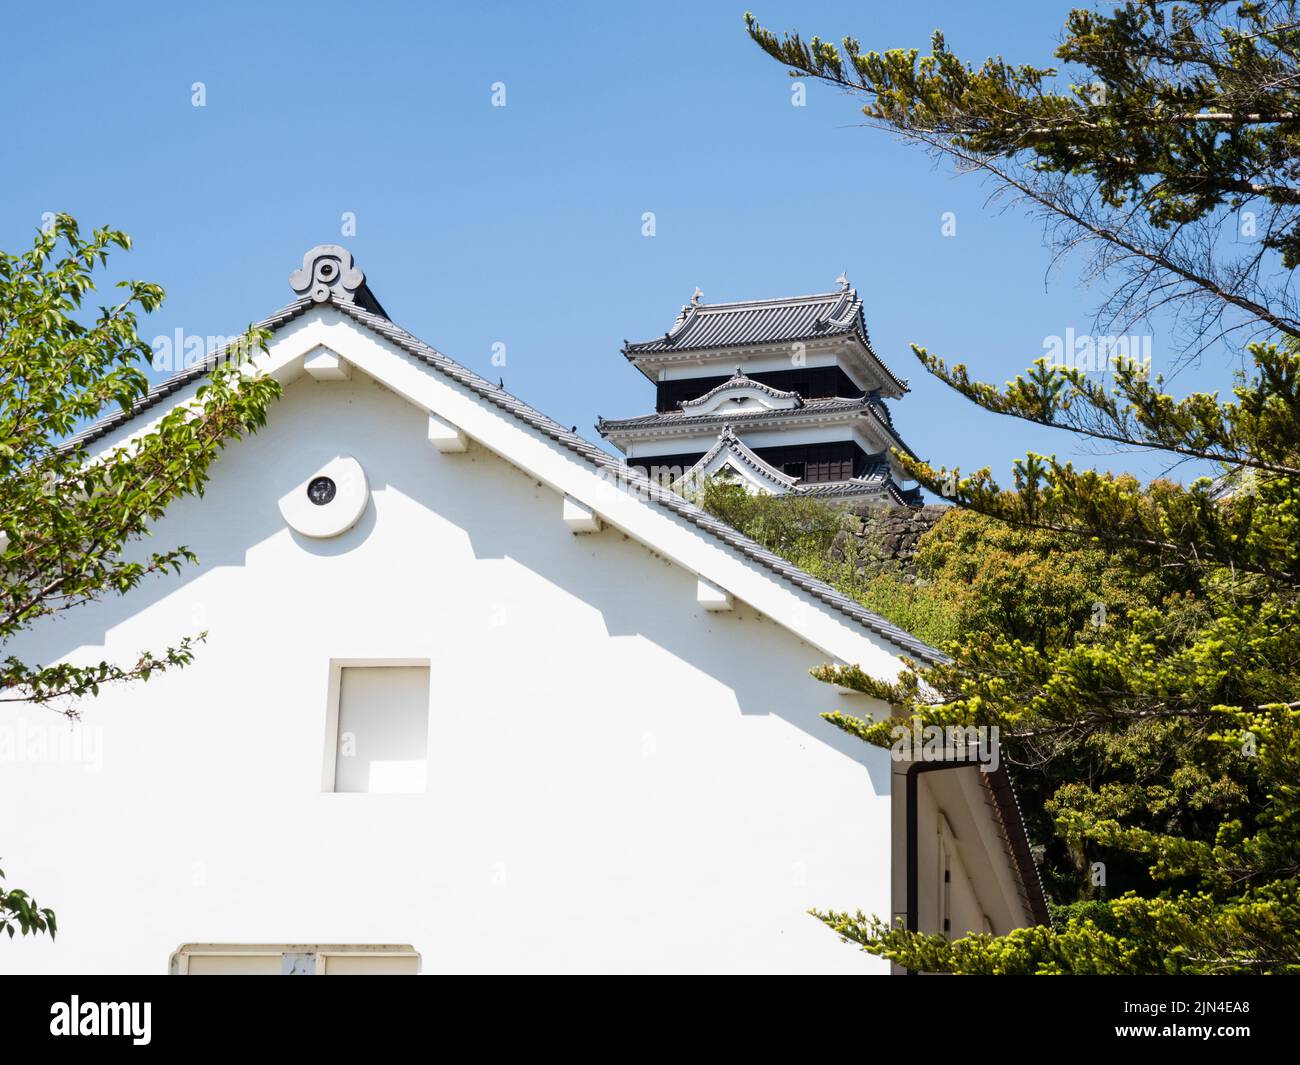 Vue sur le château d'Ozu, reconstruit en 2004 en utilisant des méthodes de construction traditionnelles - préfecture d'Ehime, au Japon Banque D'Images